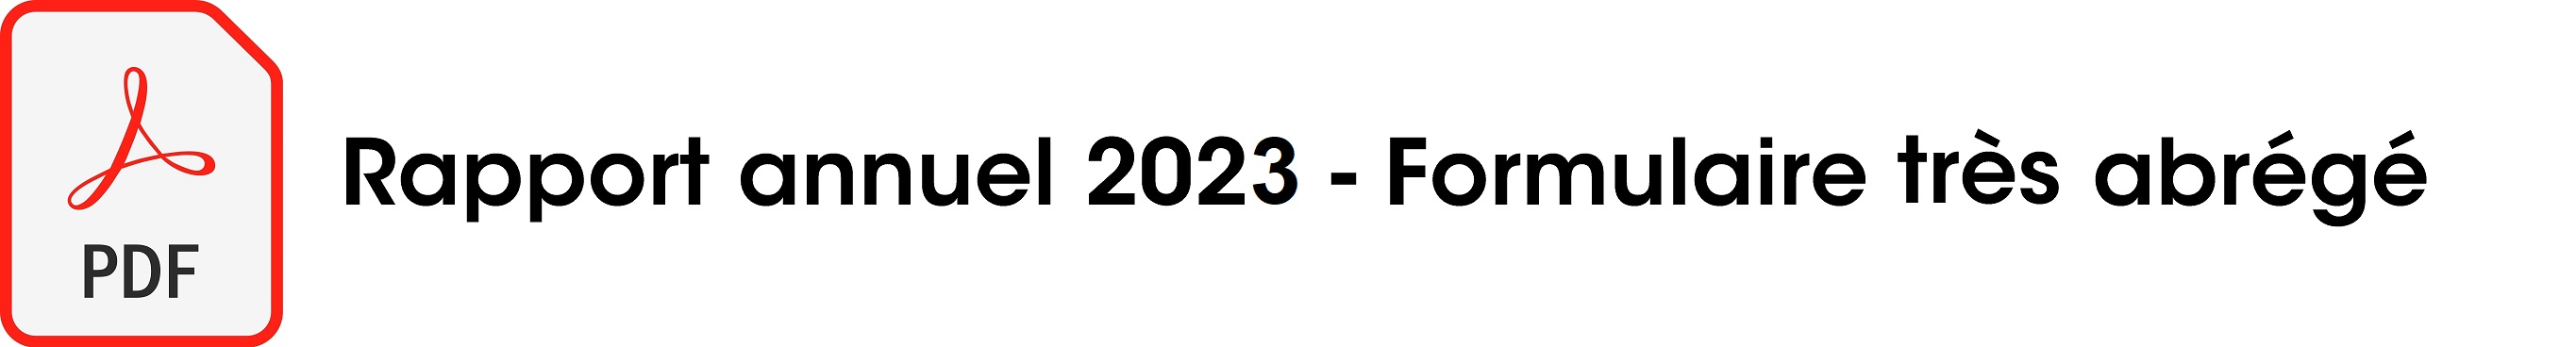 rapport annuel très abrégé 2023.jpg